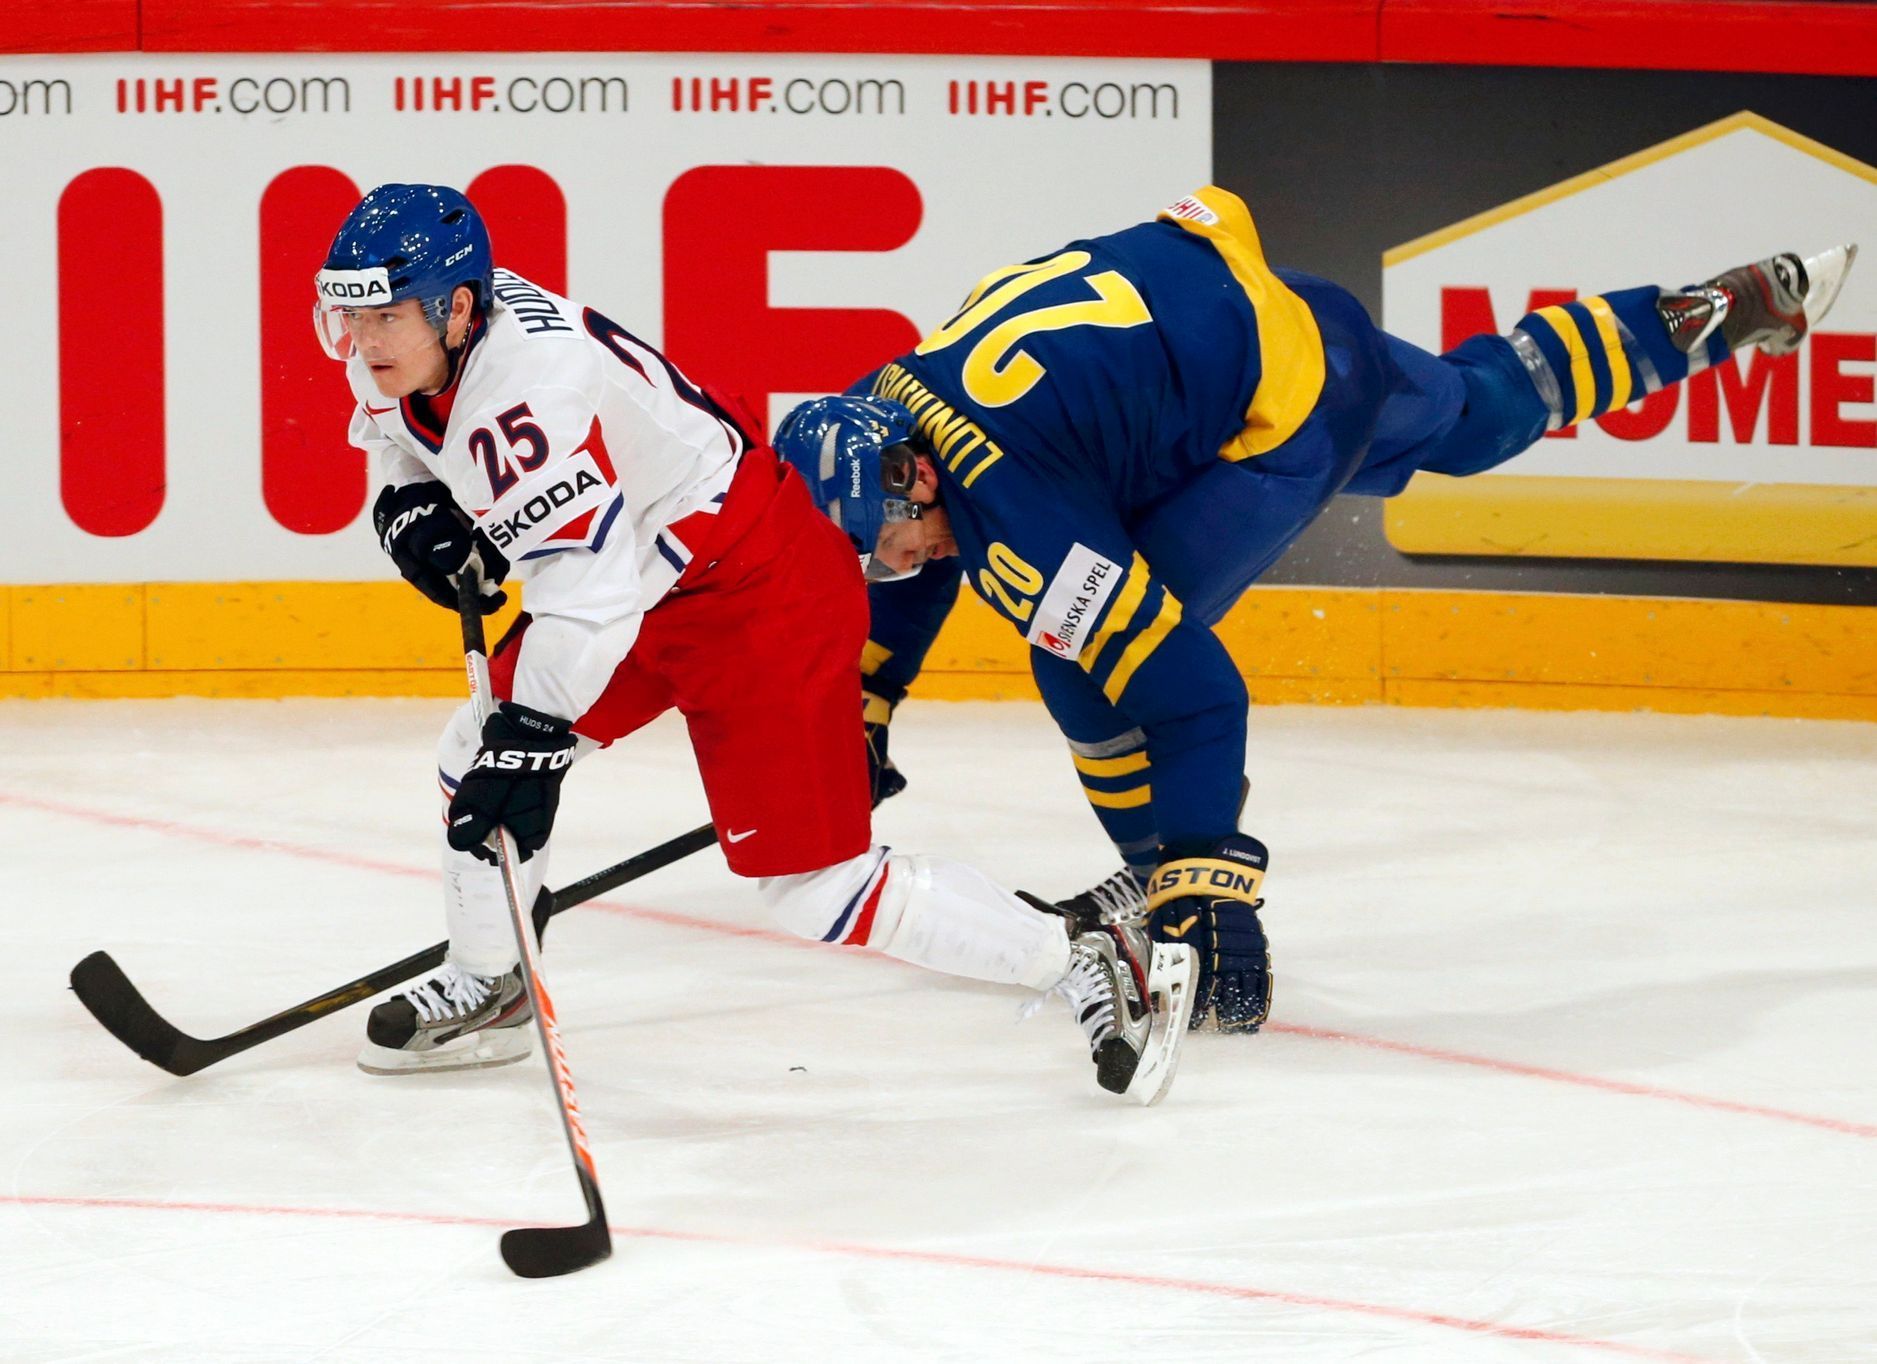 MS v hokeji 2013, Česko - Švédsko: Jiří Hudler - Joel Lundqvist